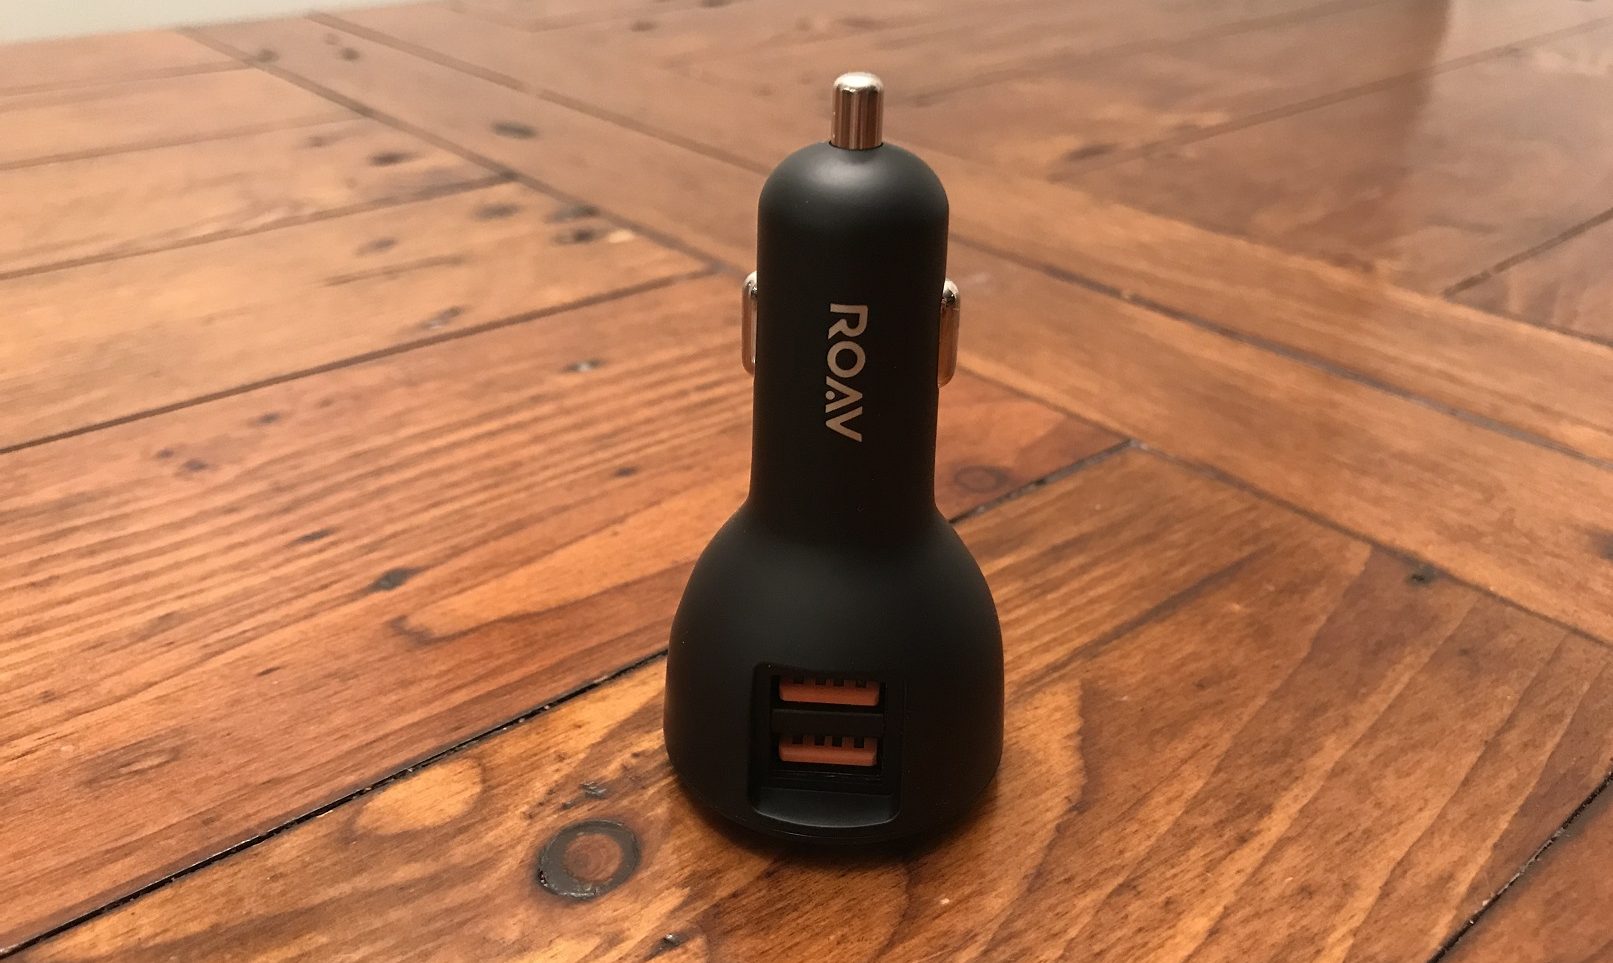 Roav Bolt & Viva Pro Smart USB Chargers